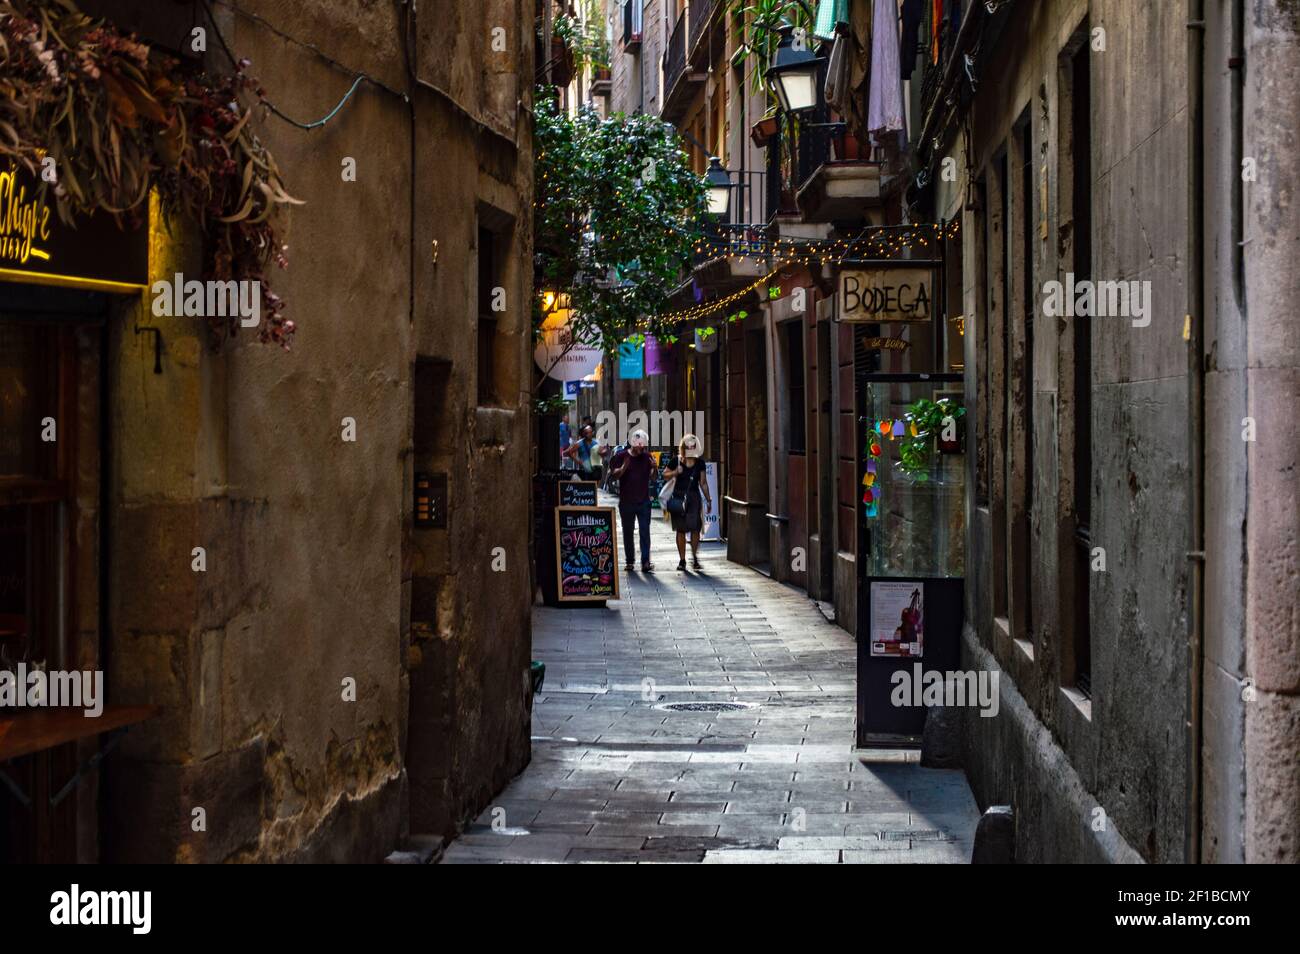 Barcelone, Espagne - 25 juillet 2019 : rue animée avec des lumières, des cafés et des boutiques dans le quartier romain de la ville de Barcelone, Espagne Banque D'Images